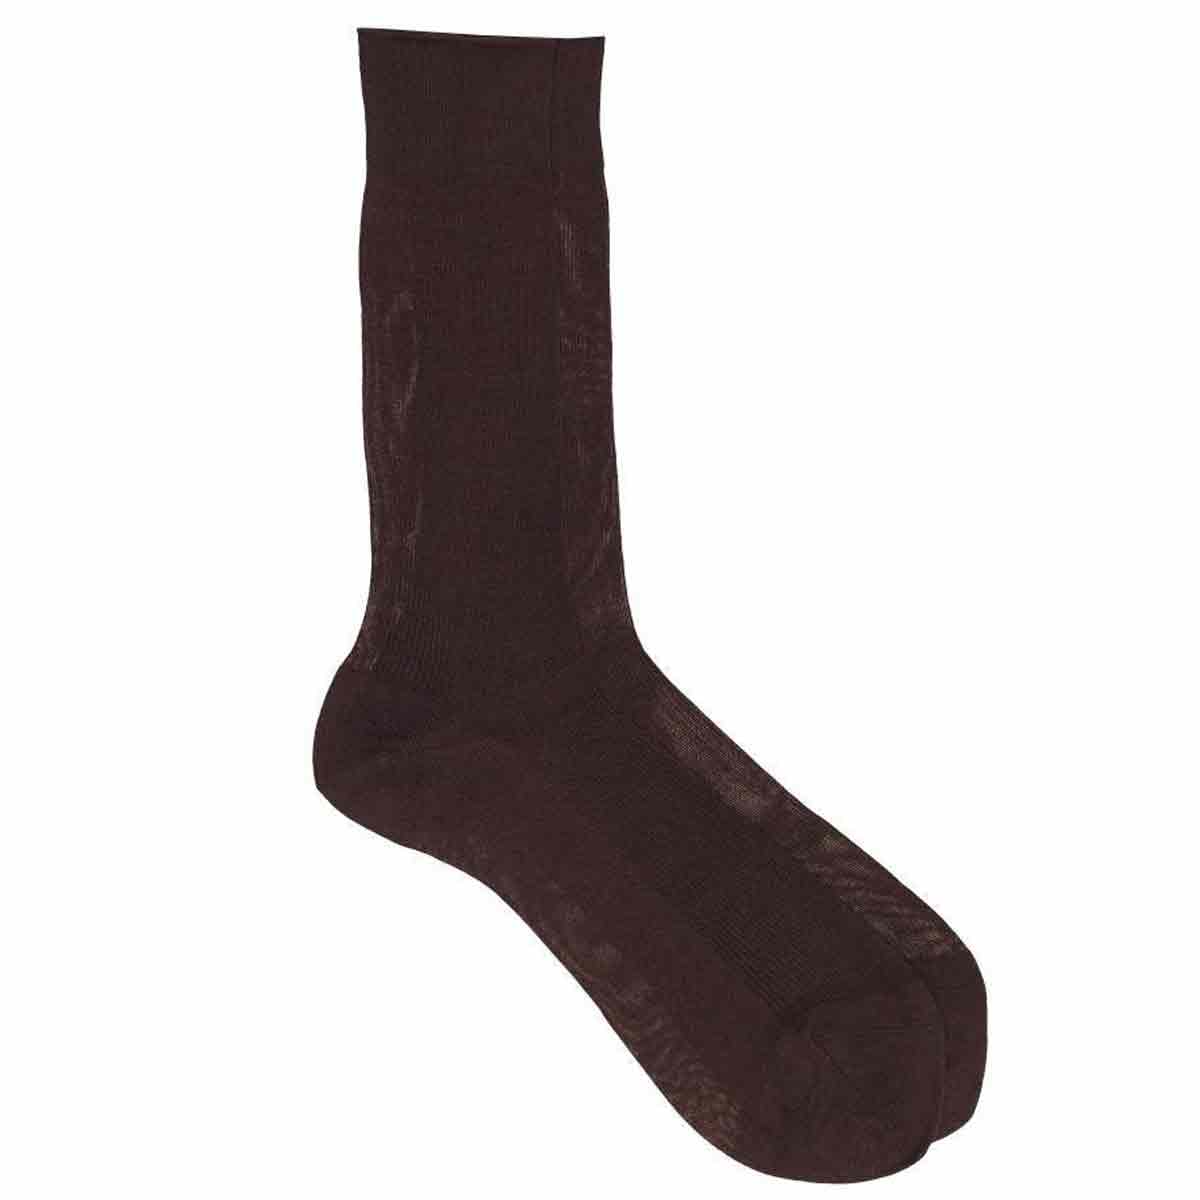 SOCKS: Men's socks in 100% cotton - socks that do not tighten